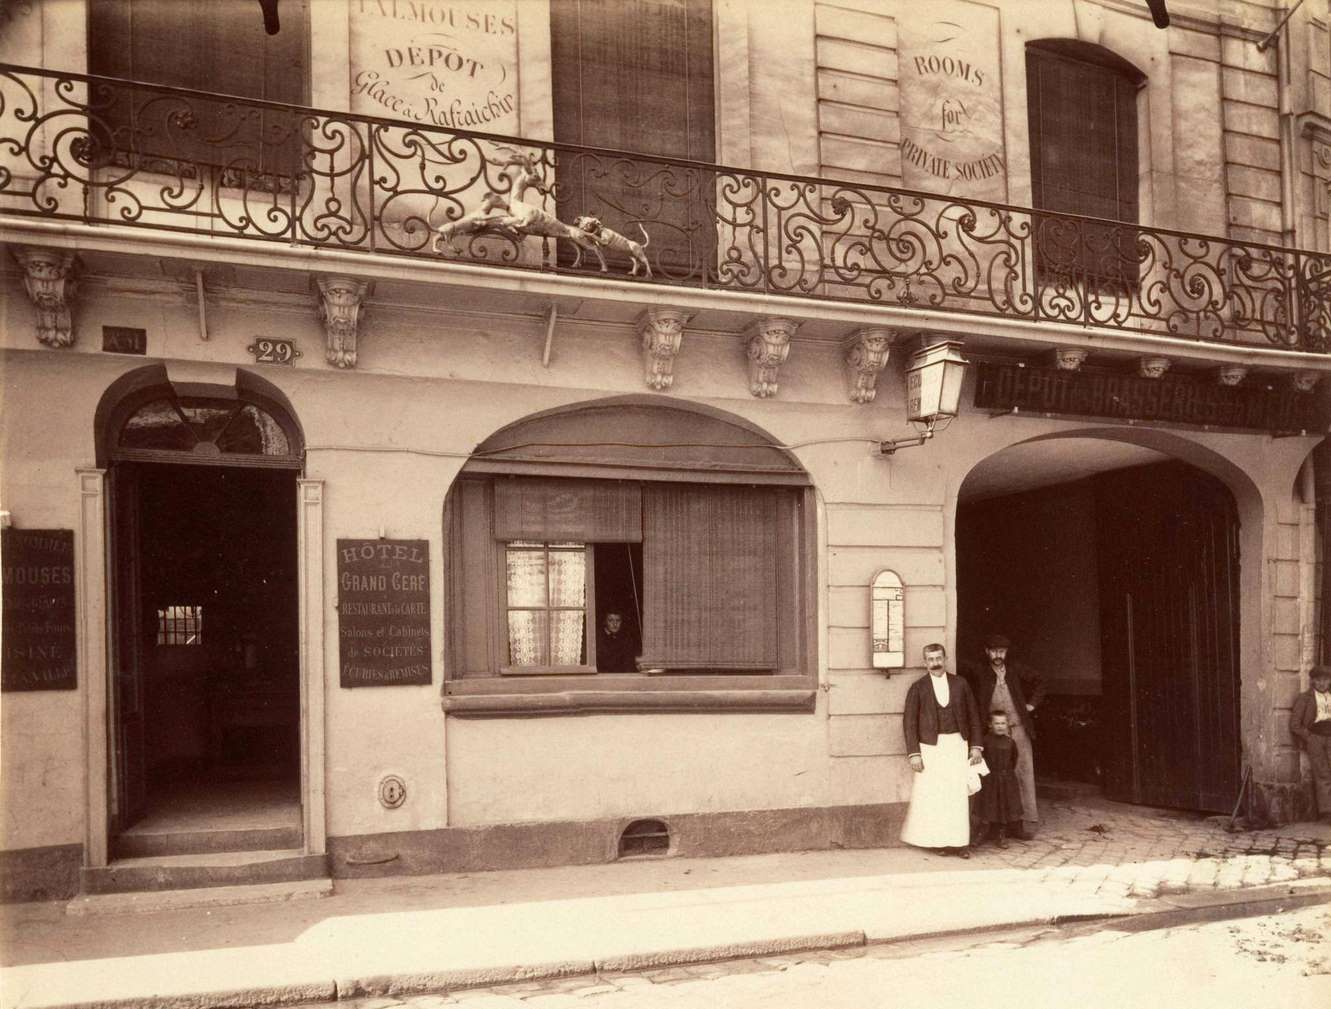 St. Denis, Ancien Relais de la Poste d'Ecouen, Hotel du Grand Cerf, 1900